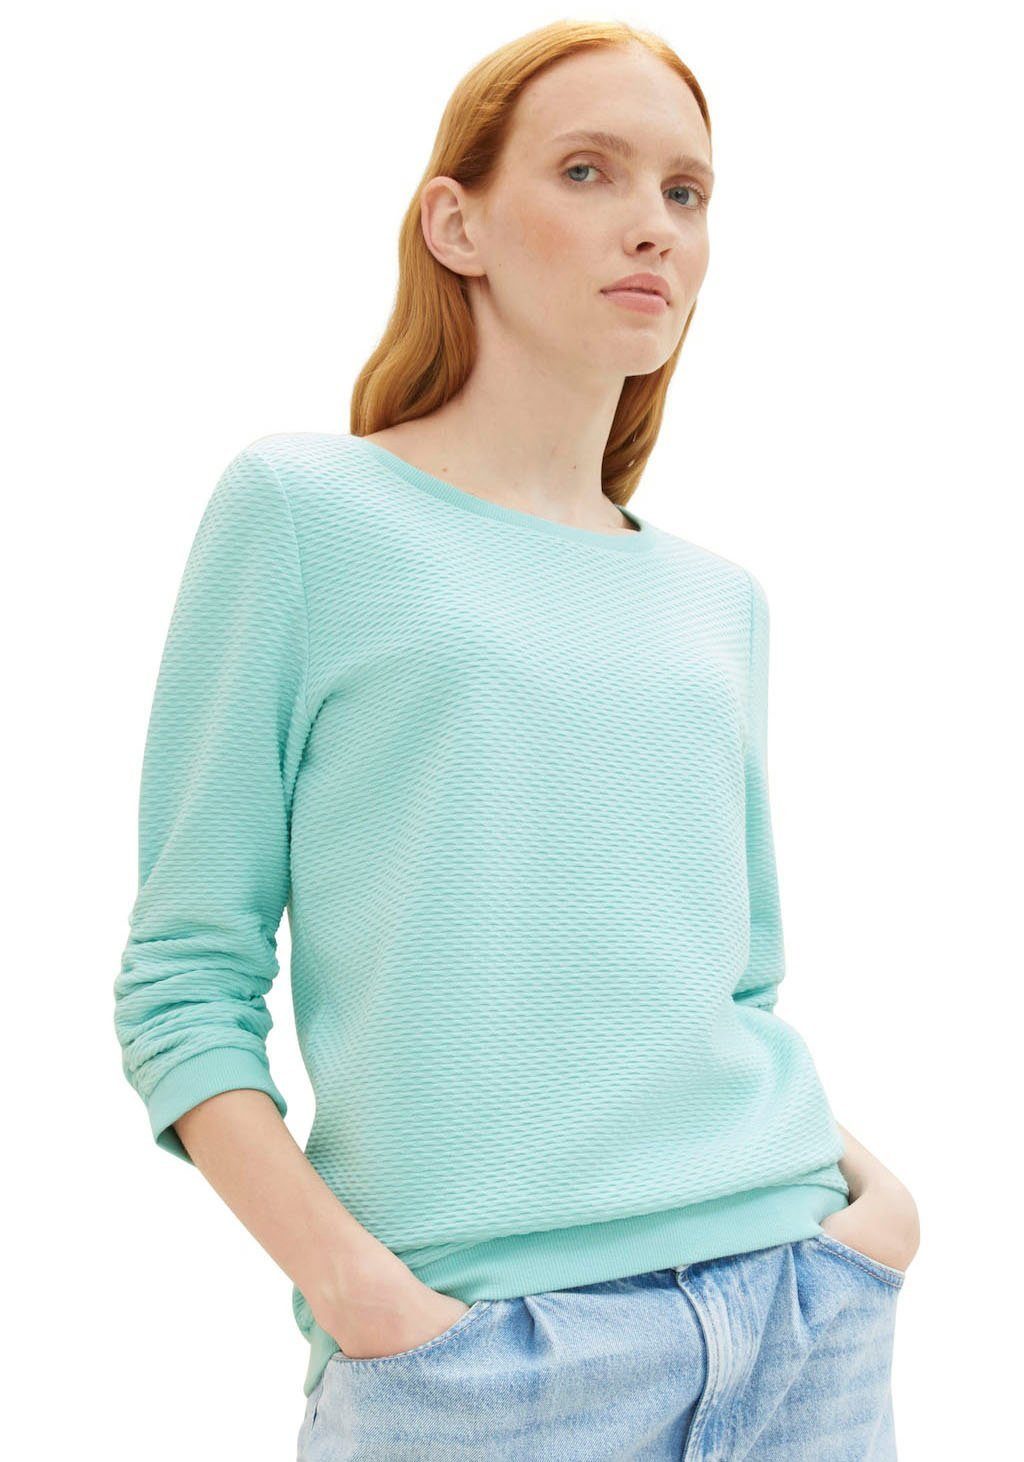 TOM TAILOR Denim Sweatshirt mit Materialoberfläche turquoise besonderer pastel